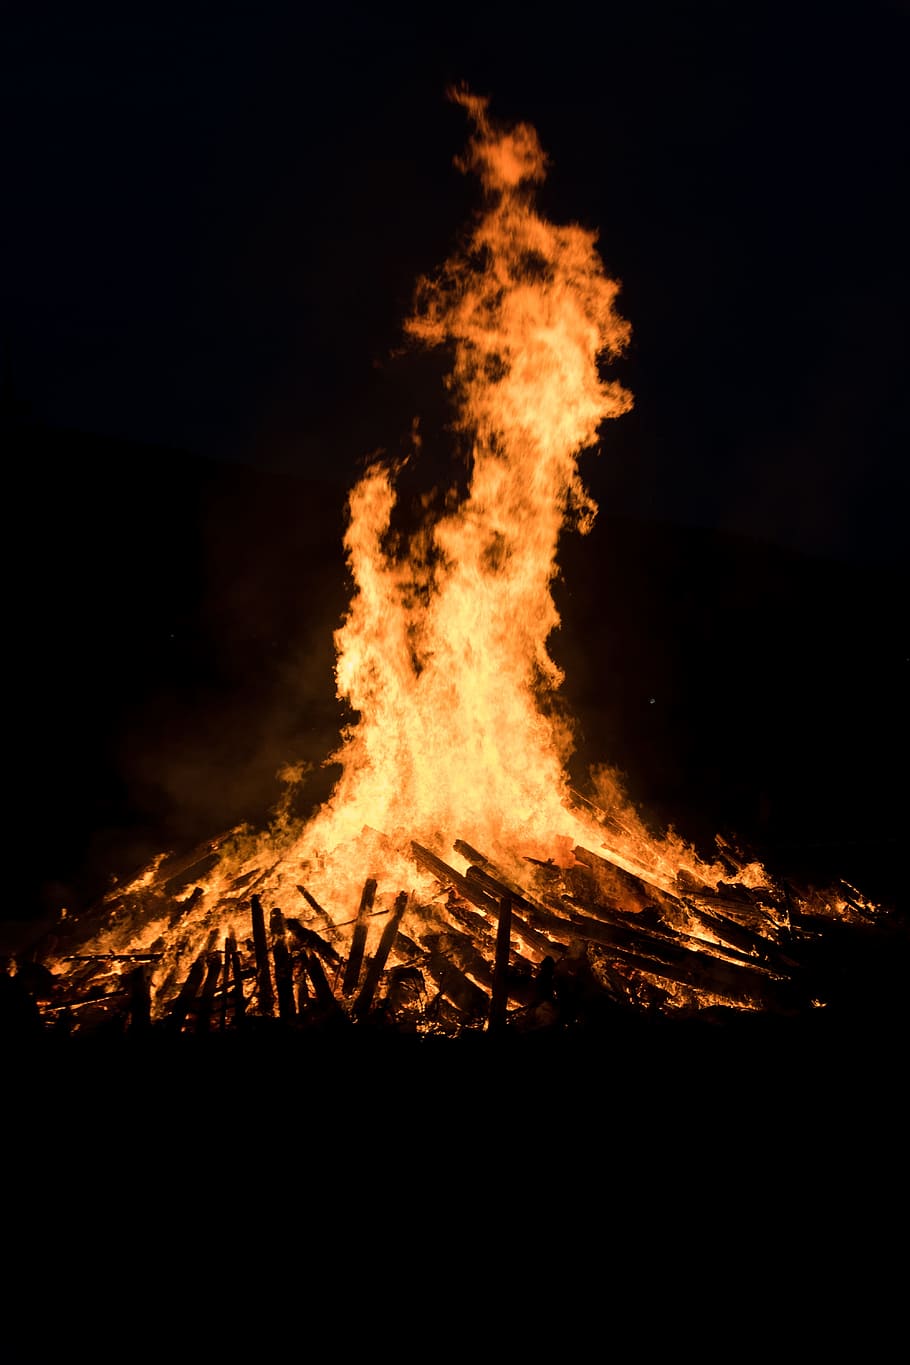 fuego, llama, solsticio, festival de fuego a mediados del verano, mayo fuego, talenhausen, biebertal, caliente, calor, madera